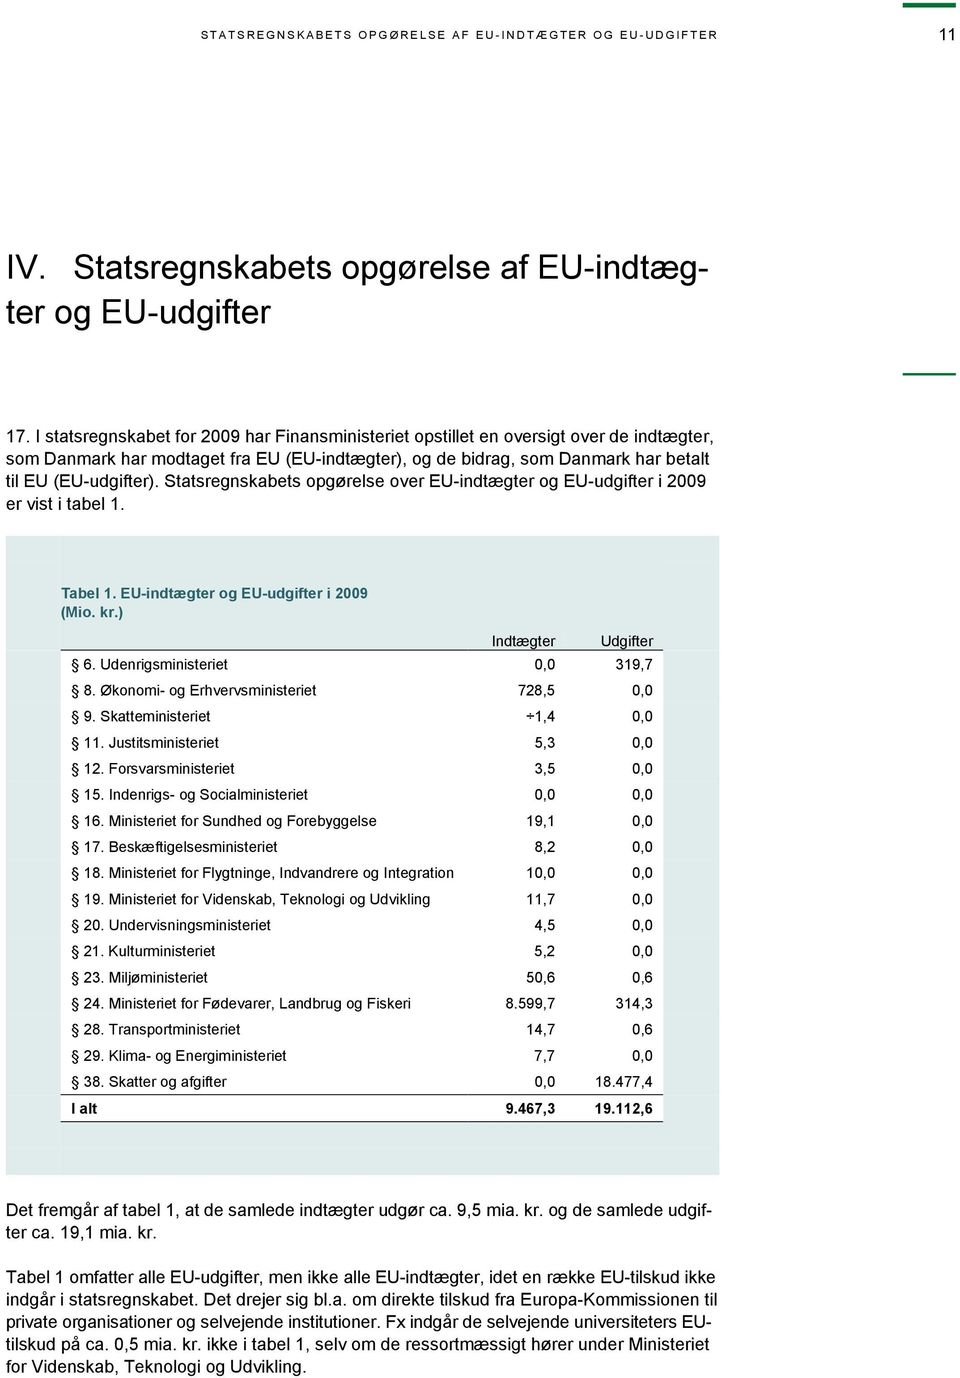 Statsregnskabets opgørelse over EU-indtægter og EU-udgifter i 2009 er vist i tabel 1. Tabel 1. EU-indtægter og EU-udgifter i 2009 (Mio. kr.) Indtægter Udgifter 6. Udenrigsministeriet 0,0 319,7 8.